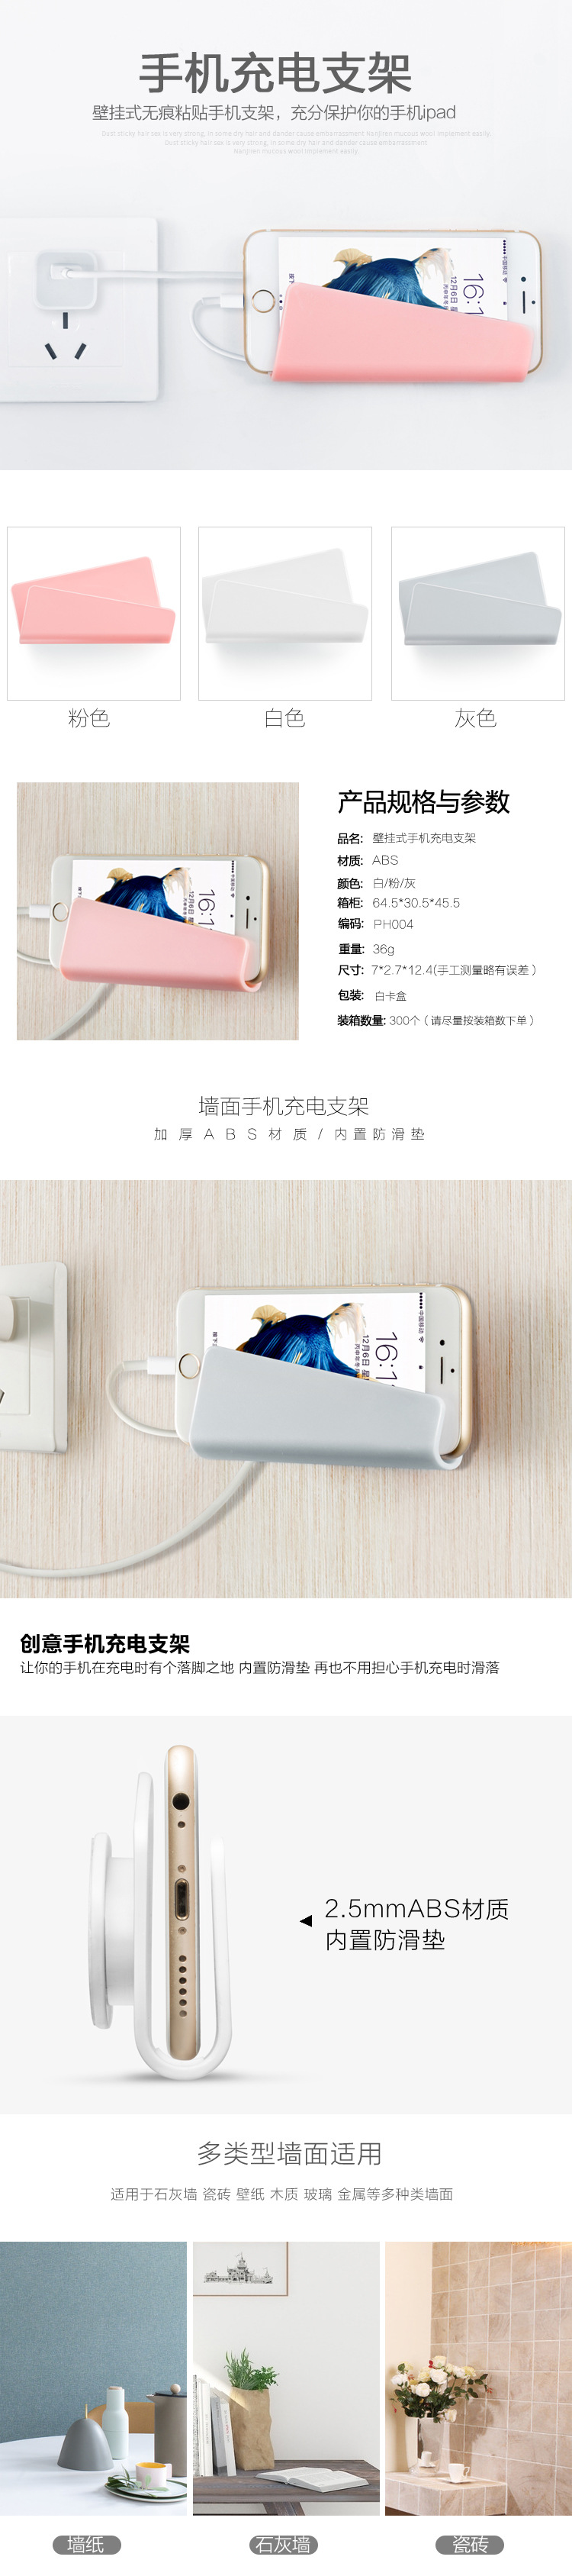 專利產品 粘貼式創意墻壁無痕 手機支架 手機座ipad充電支架39g